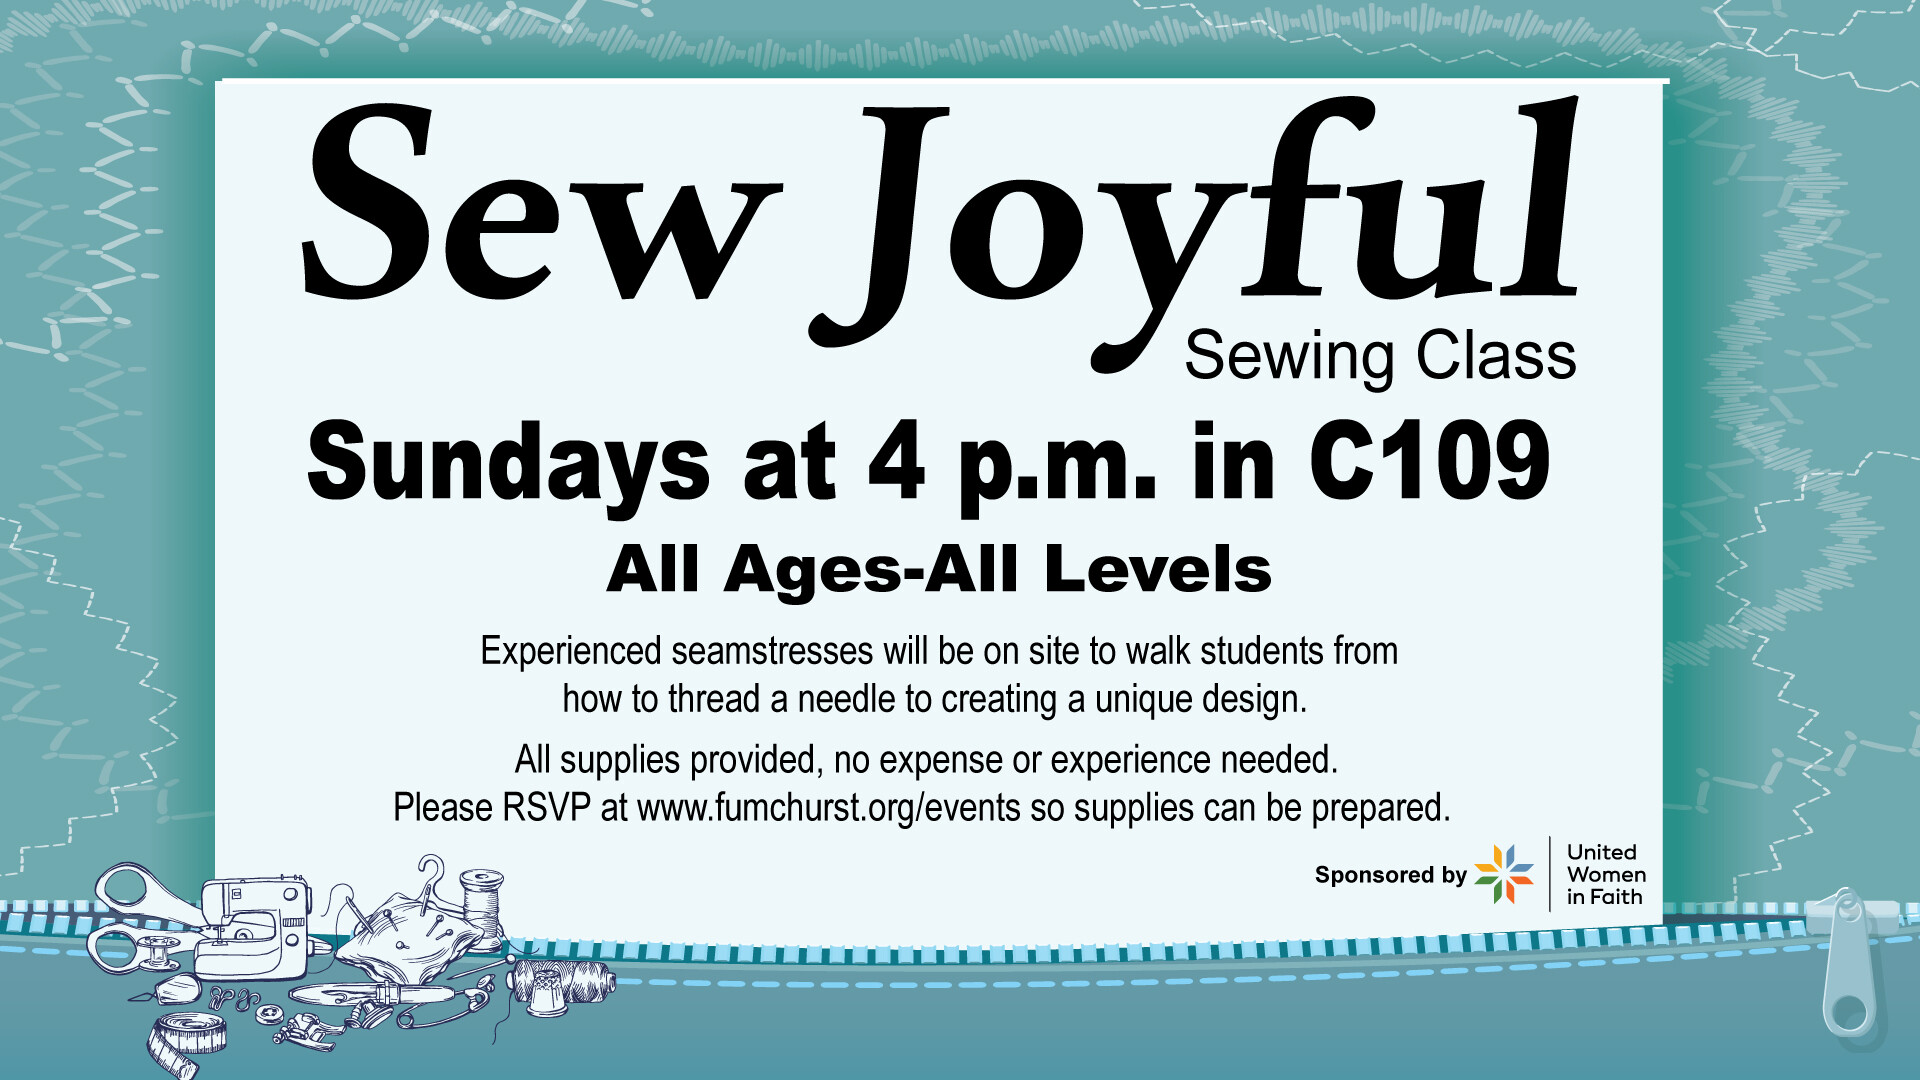 Sew Joyful Sewing Classes